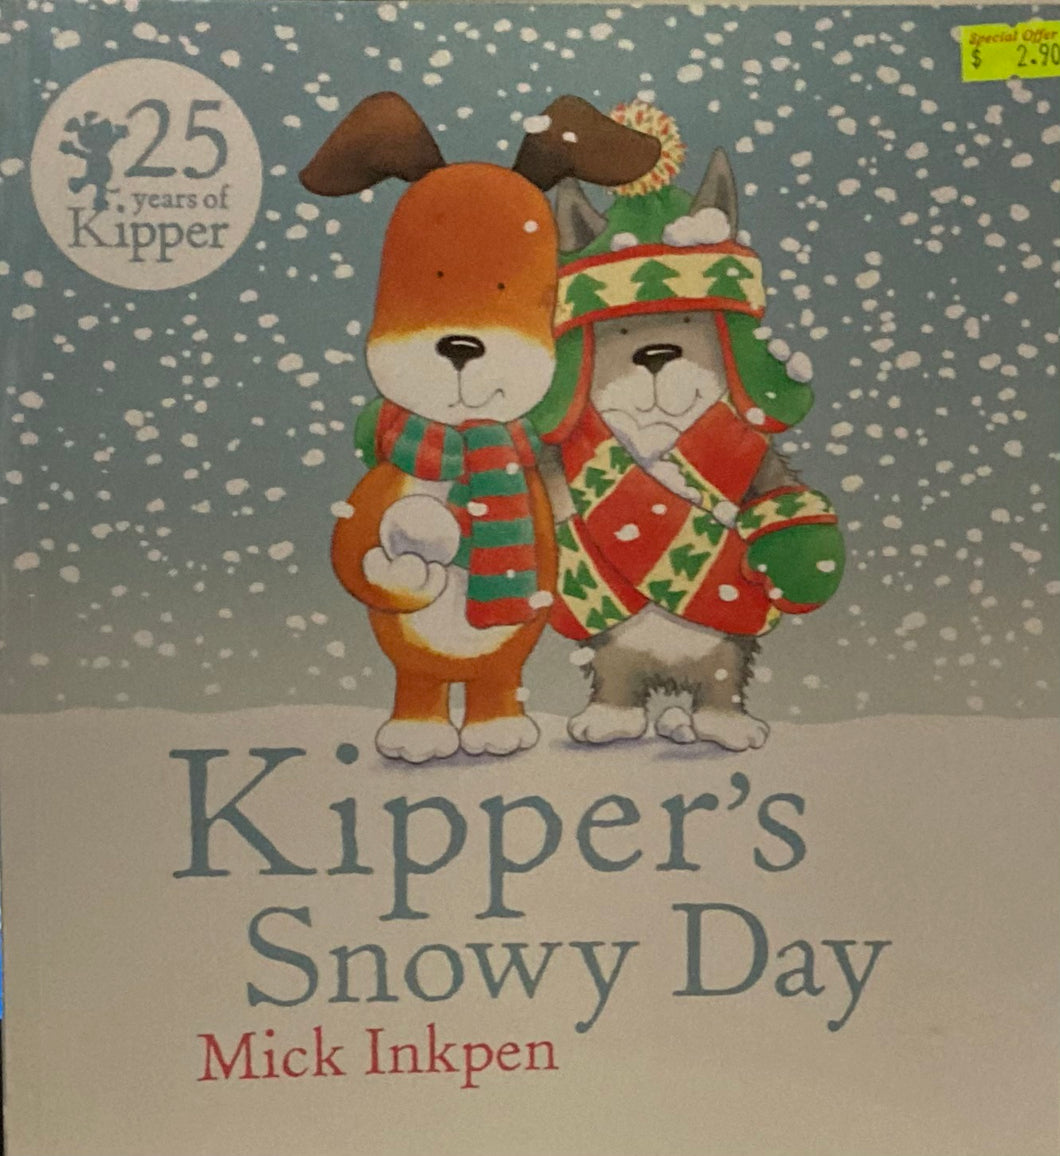 Kipper's Snowy Day - Mick Inkpen